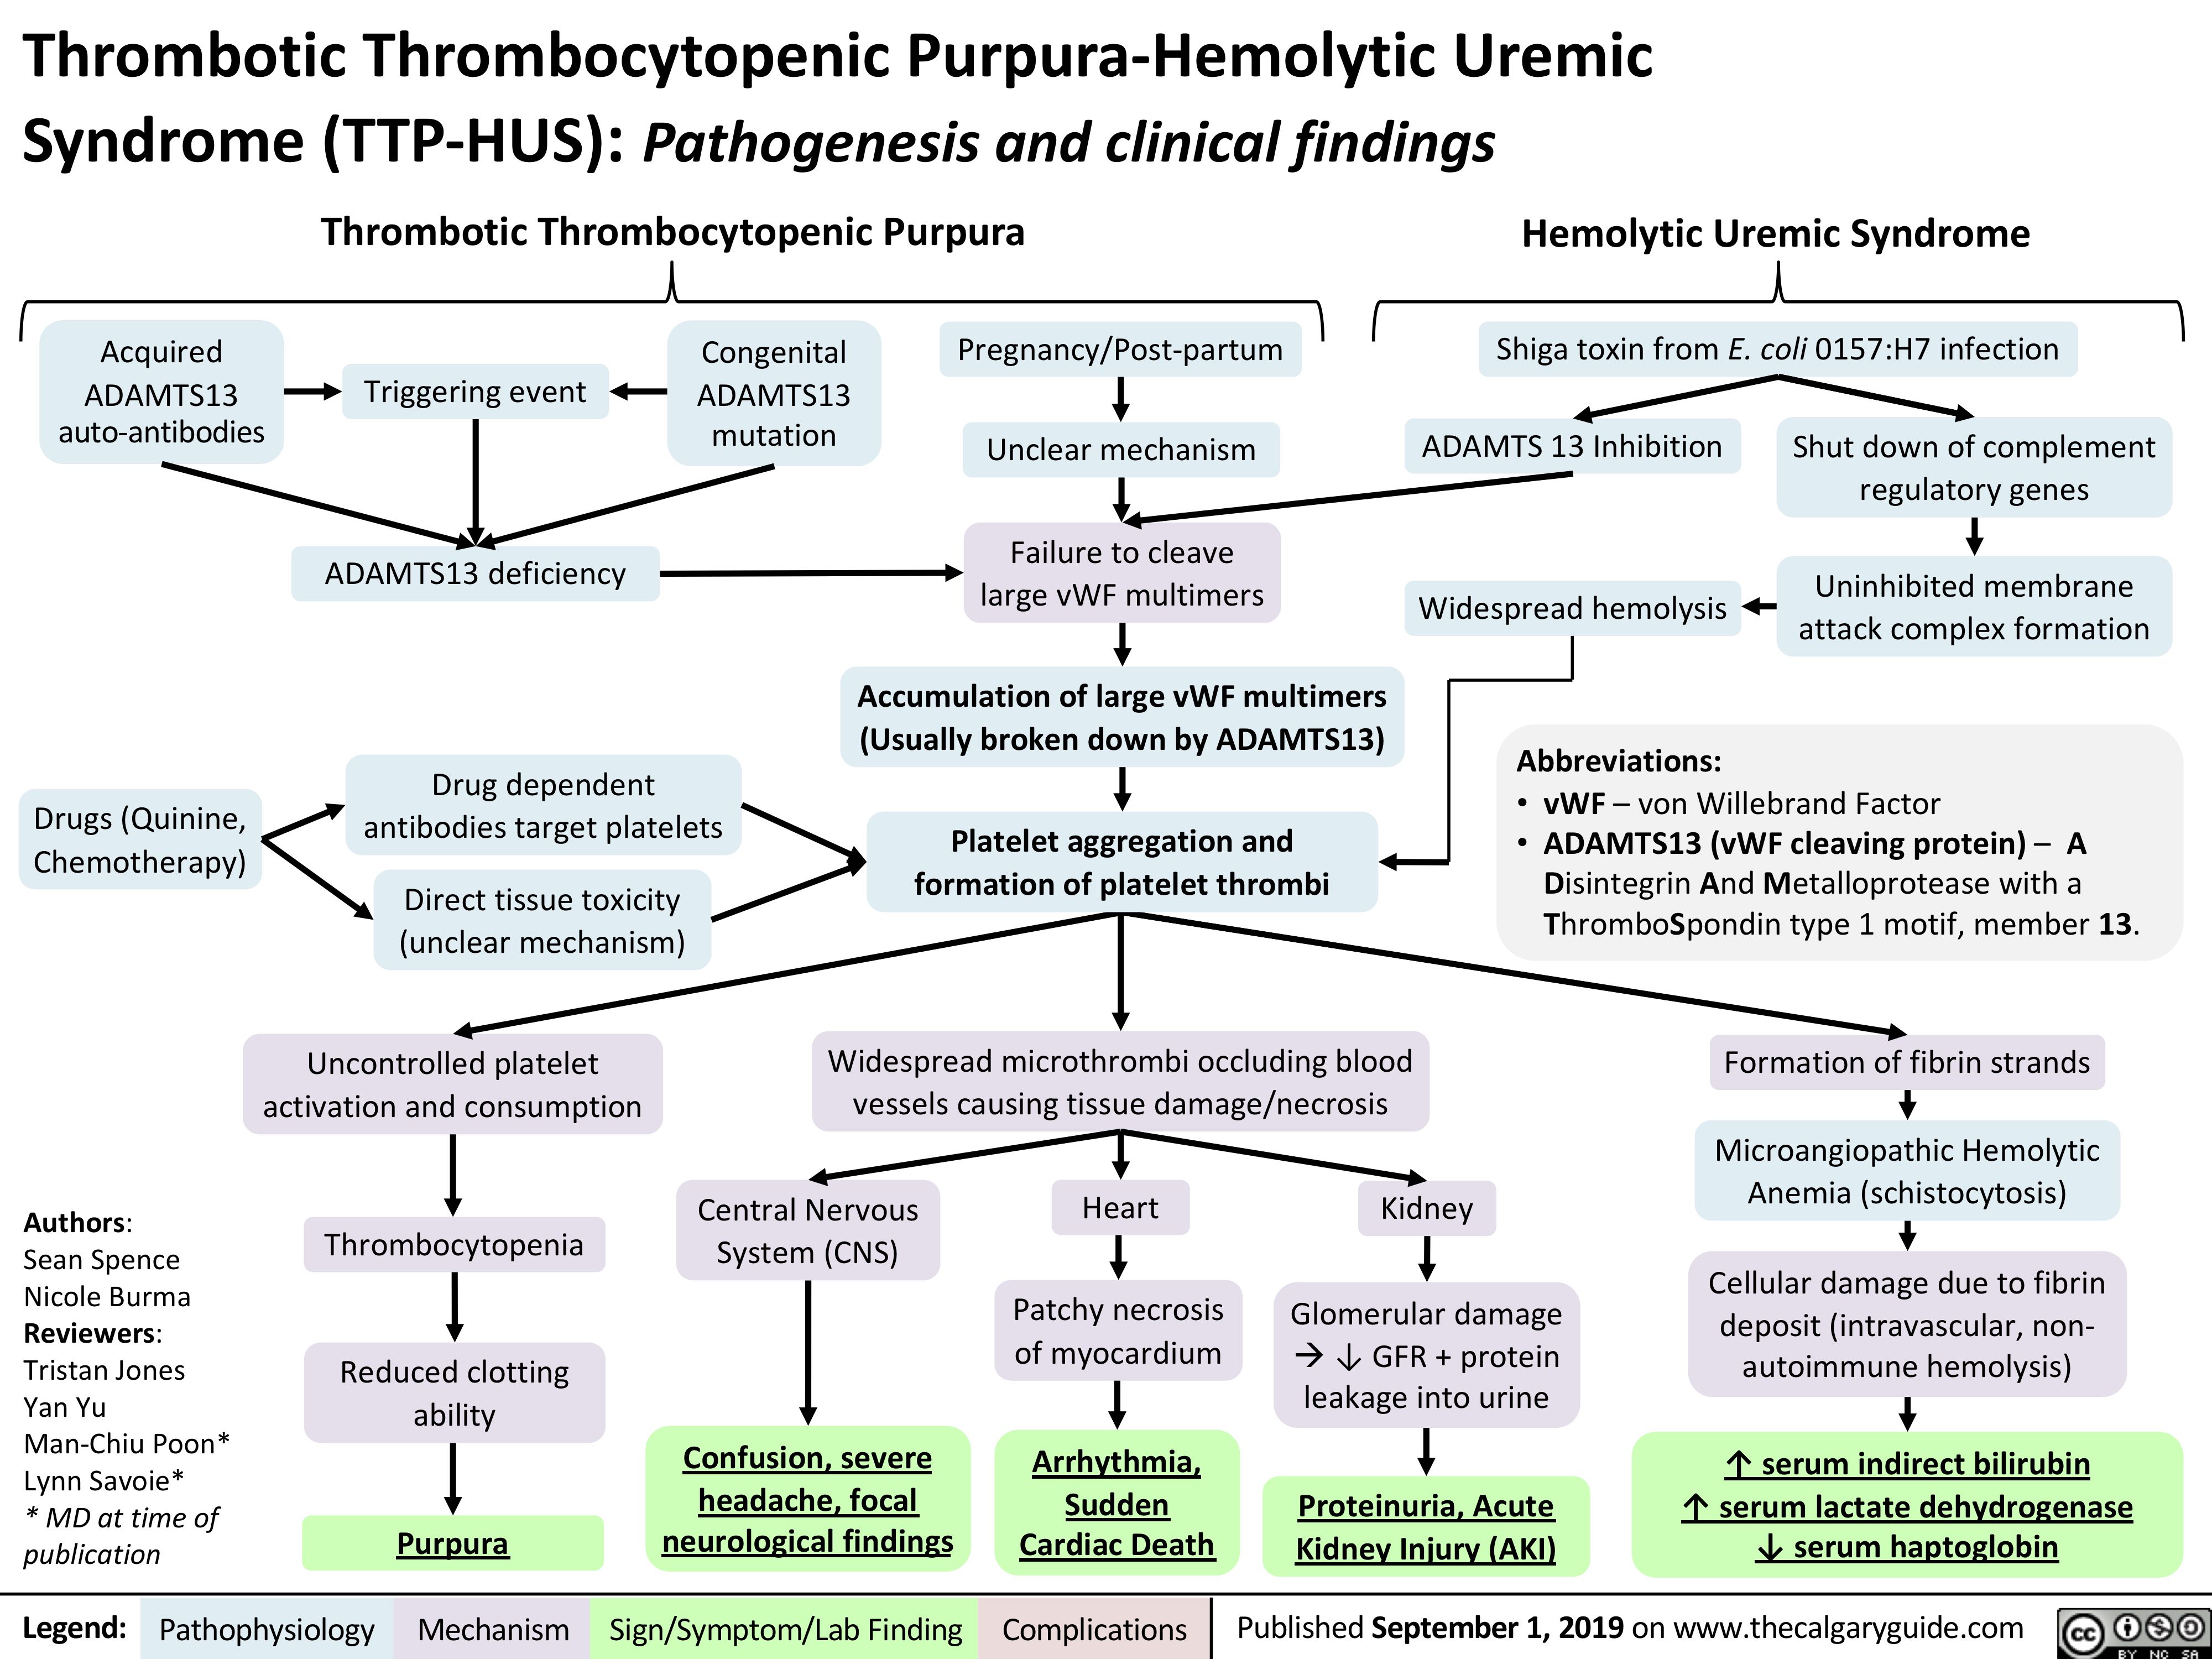 Thrombotic Thrombocytopenic Purpura-Hemolytic Uremic Syndrome (TTP-HUS